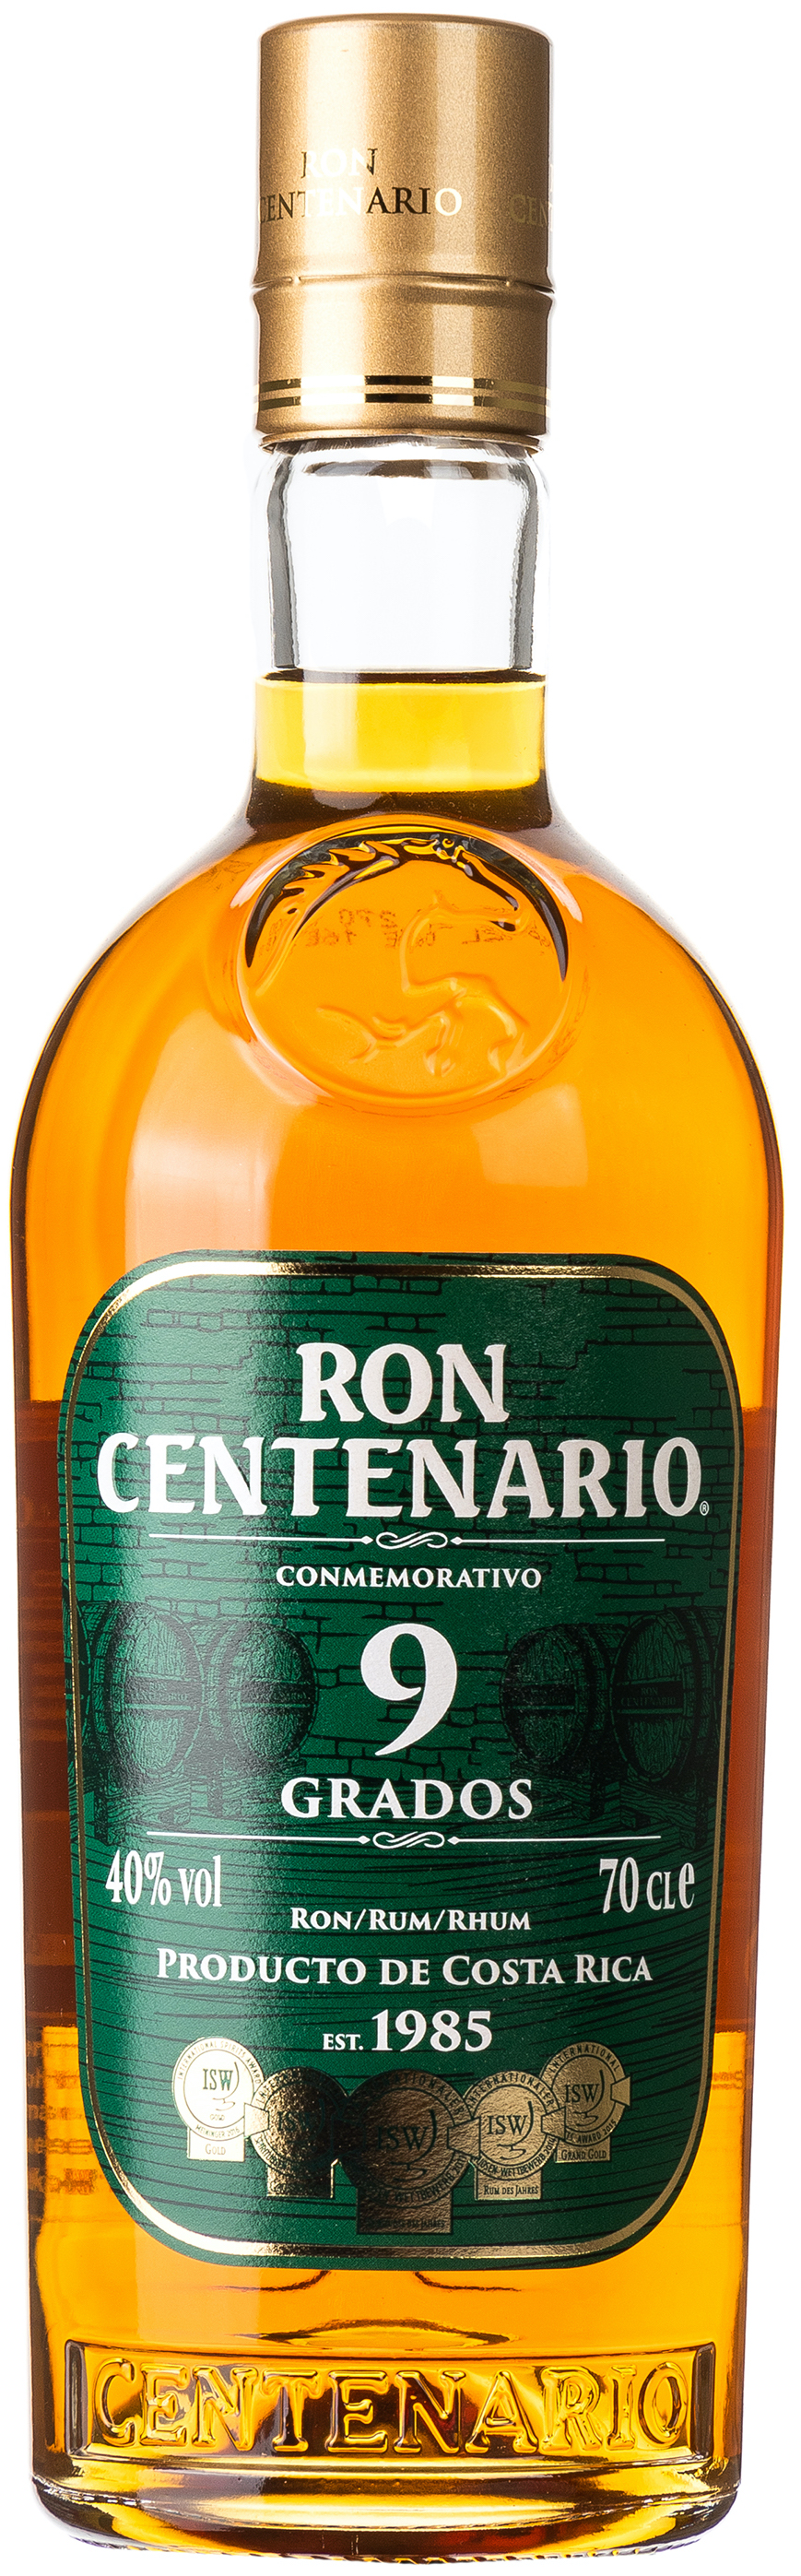 Ron Centenario Rum 9 Jahre Grados 40% vol. 0,7L